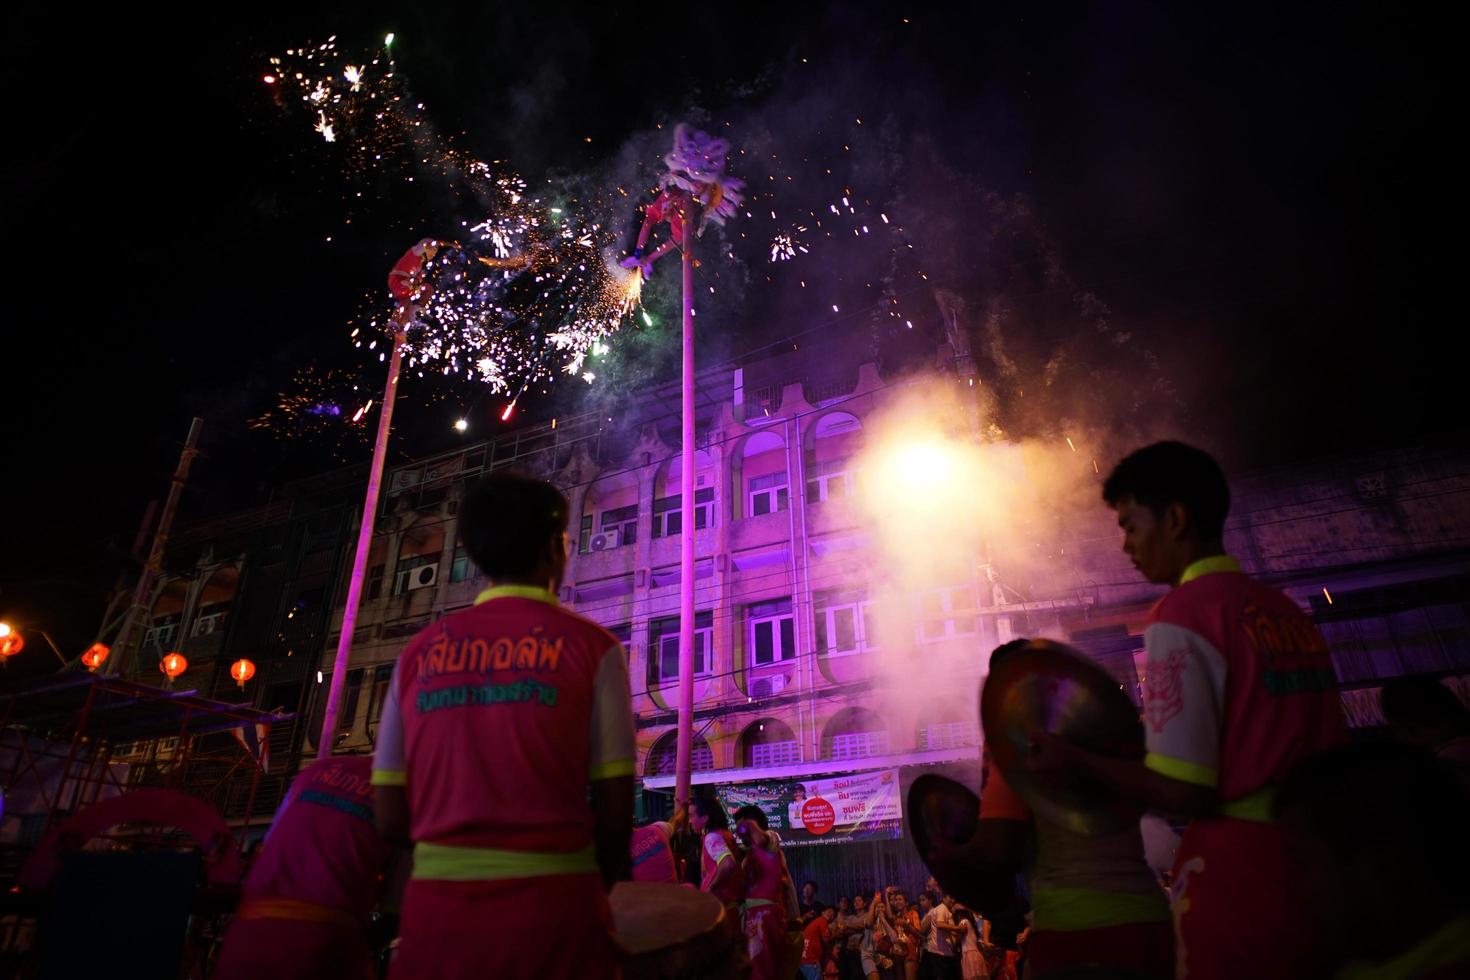 ratchaburi, thailand 2018 - chinees nieuwjaarsviering door traditionele uitvoering van leeuw met vuurwerk op de openbare straat van het centrum foto